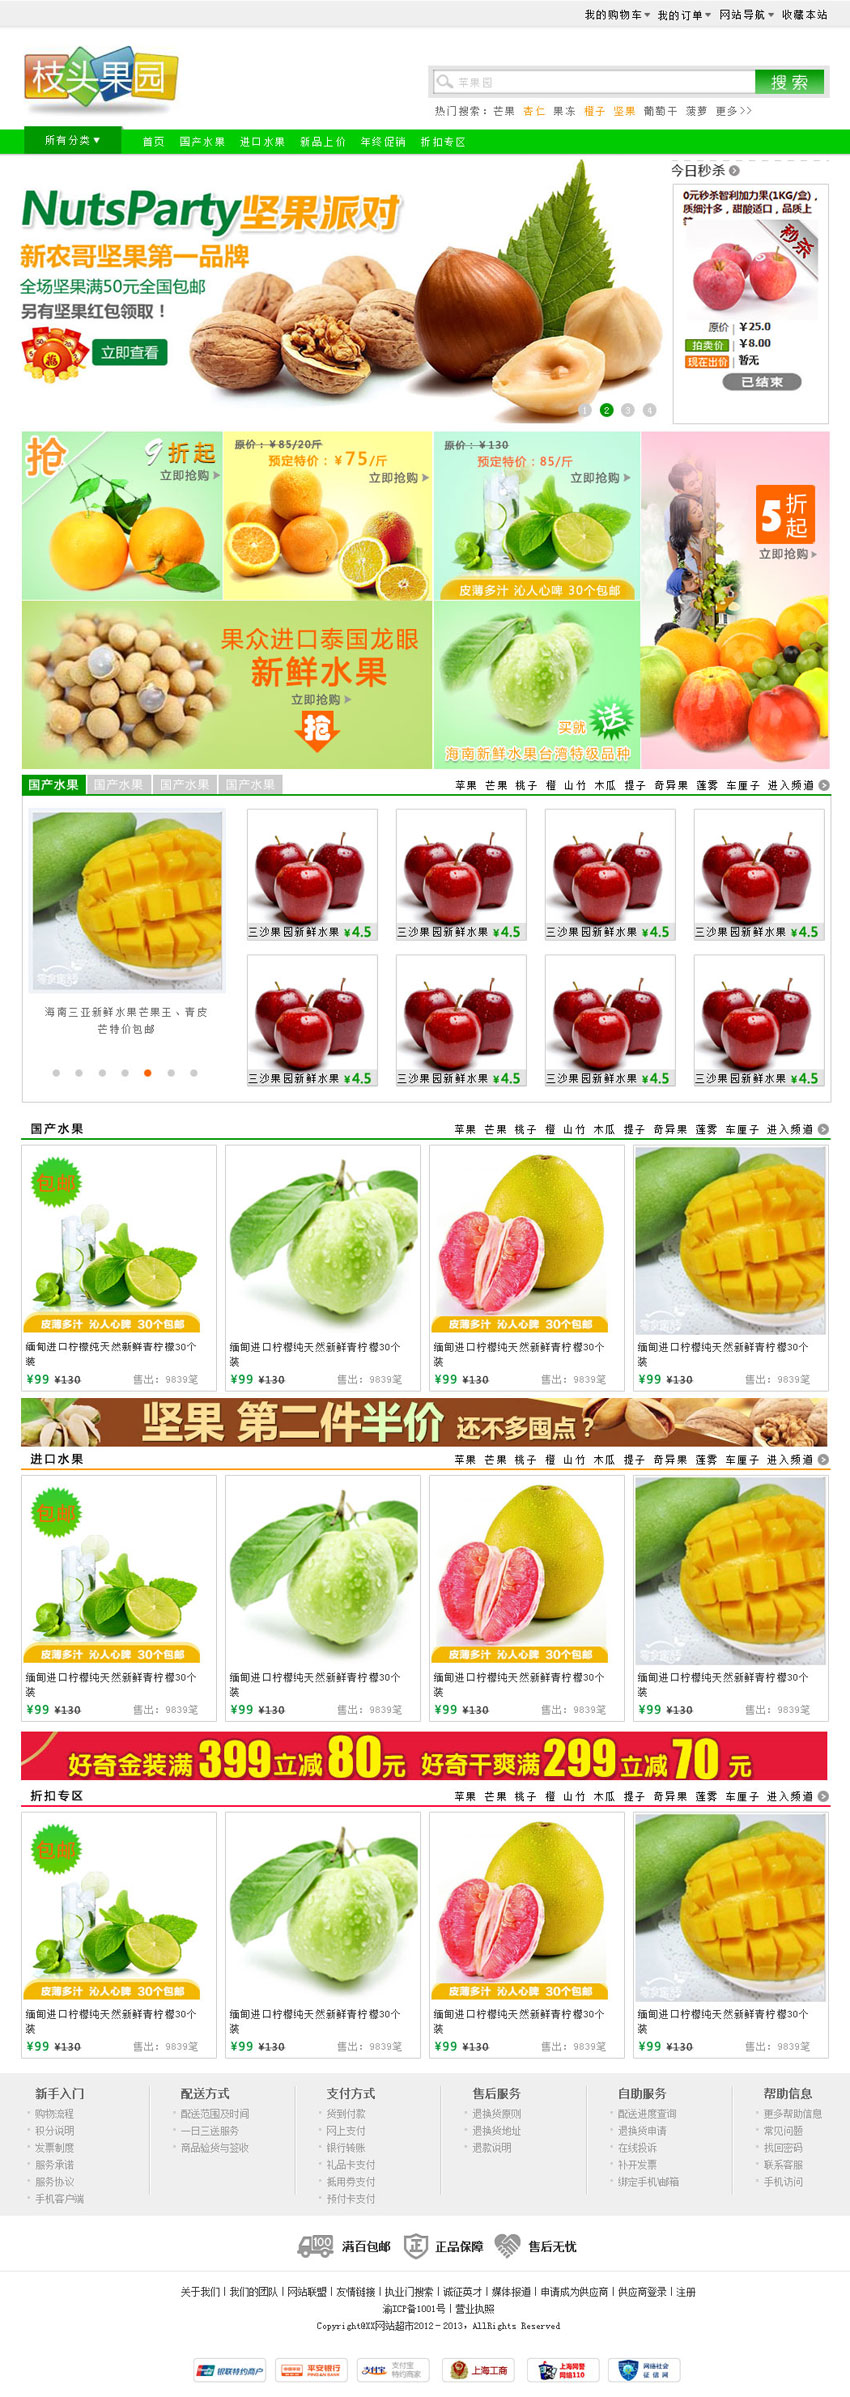 枝头果园网上购买水果商城网站首页psd模板下载